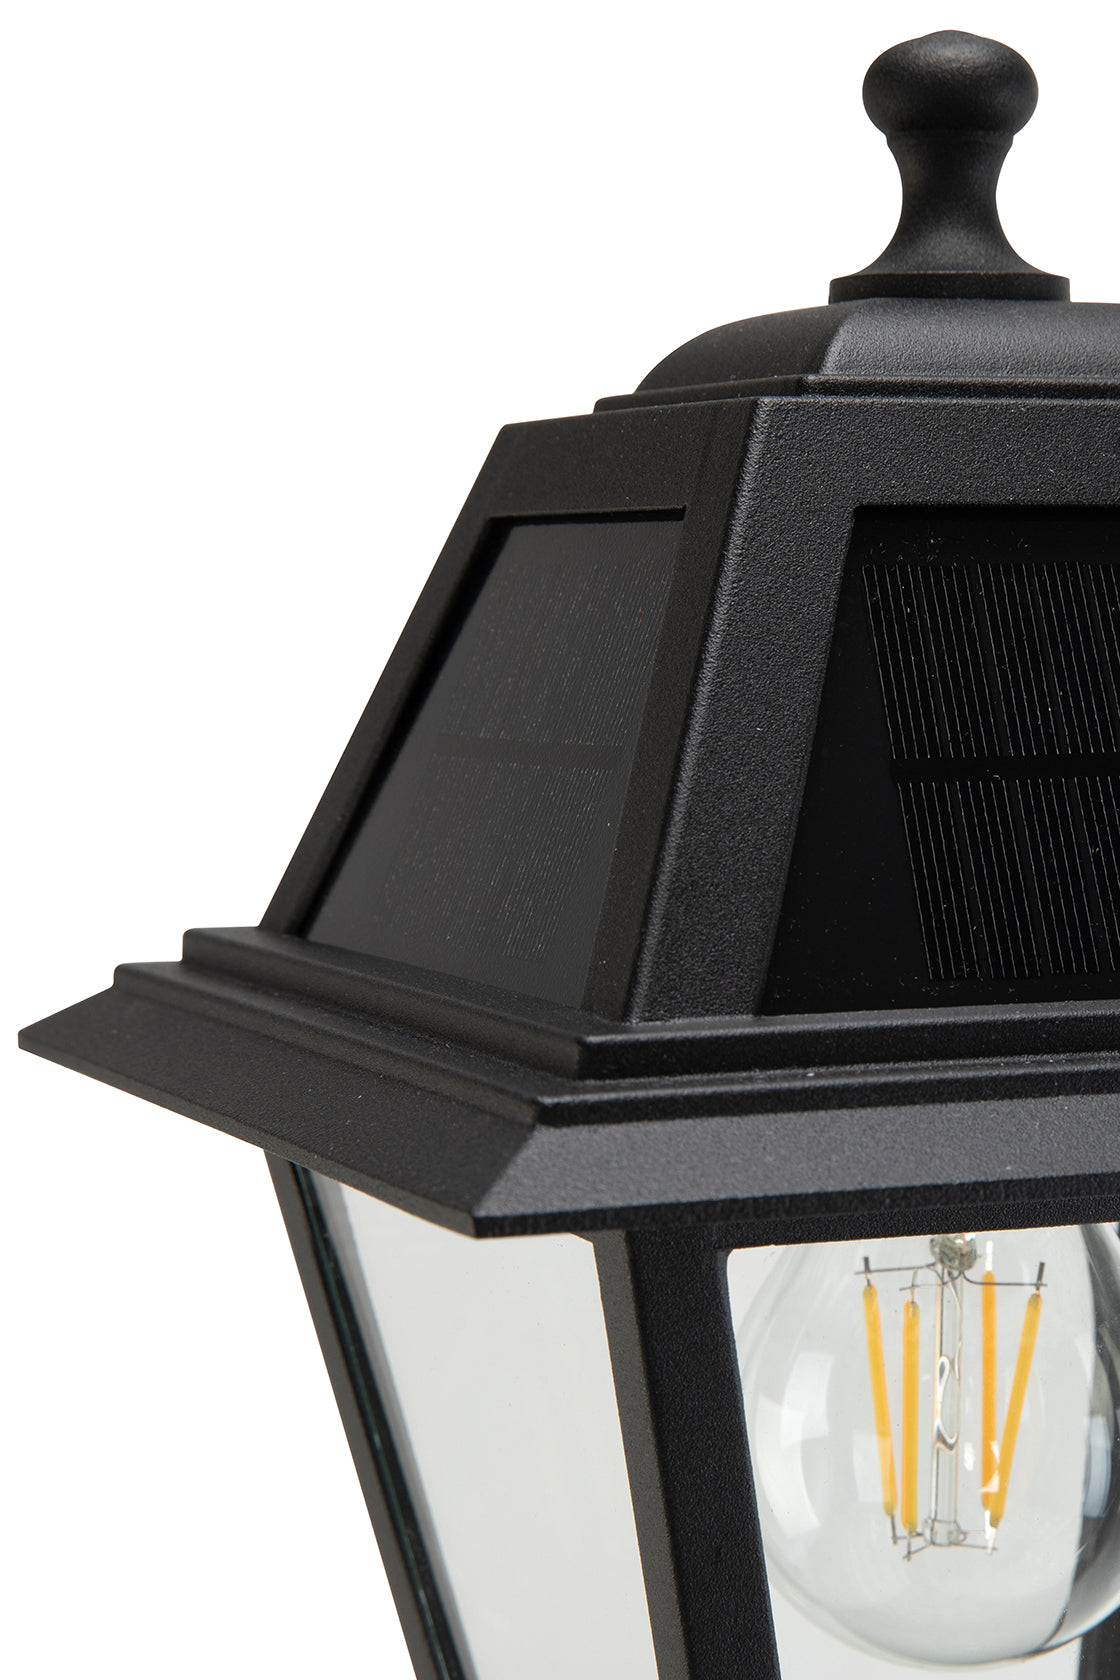 LUTEC- One-Trapezoid-Head Die-Cast Aluminum LED Outdoor Solar Street Light (Head & Pole), Dusk to Dawn. Black(Bulbs Included)